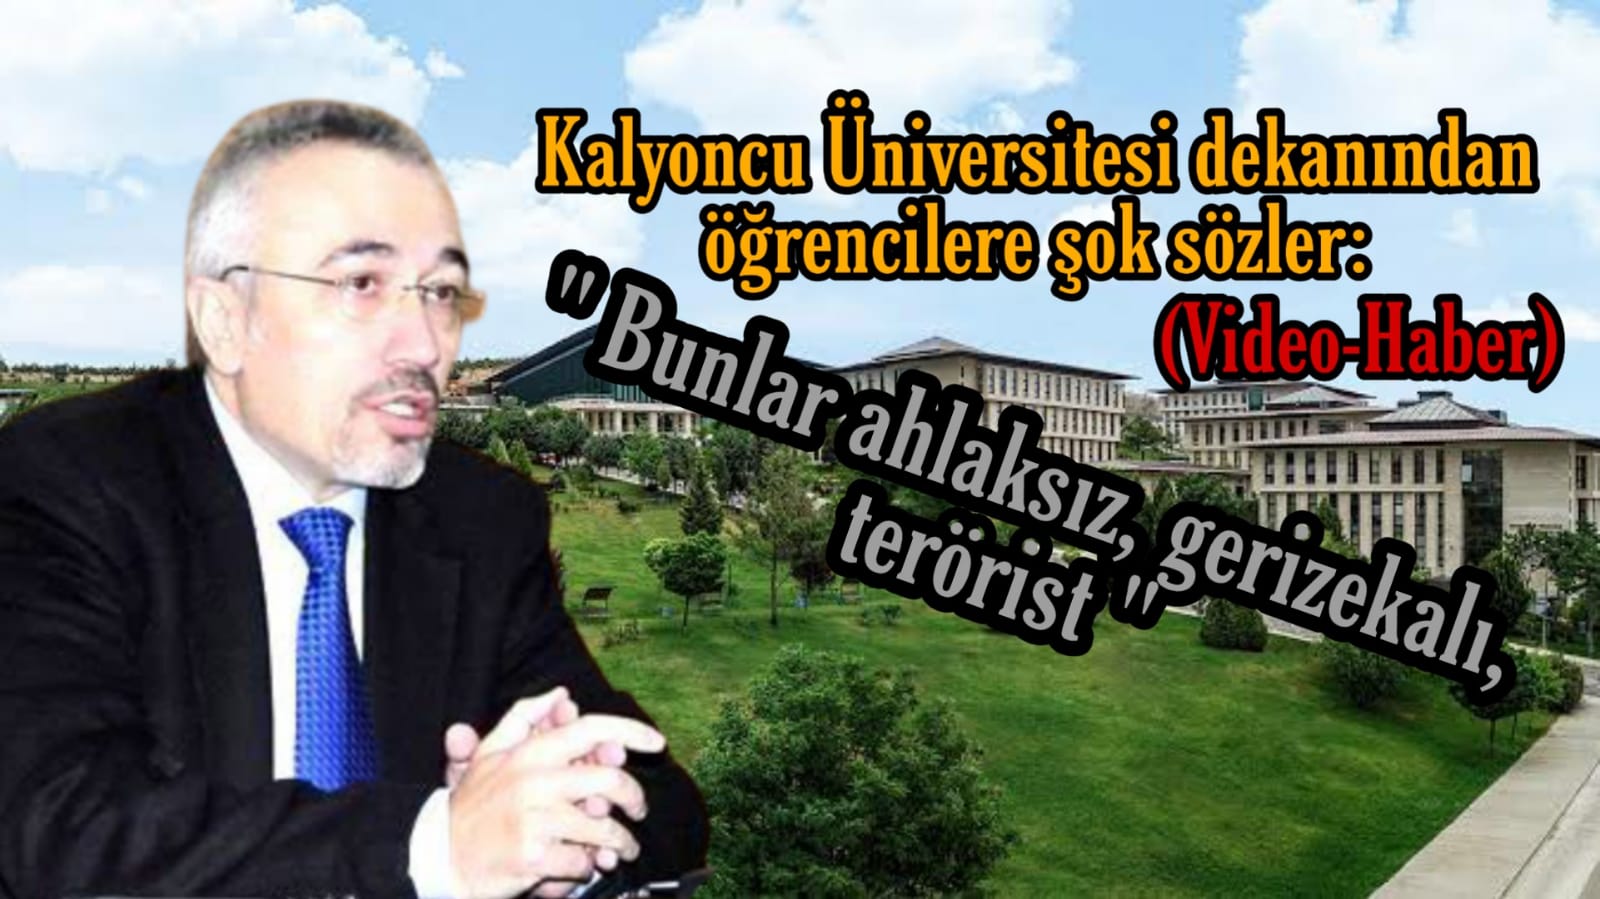 Kalyoncu Üniversitesi dekanından öğrencilerine hakaret: Bunlar ahlaksız, gerizekalı, terörist